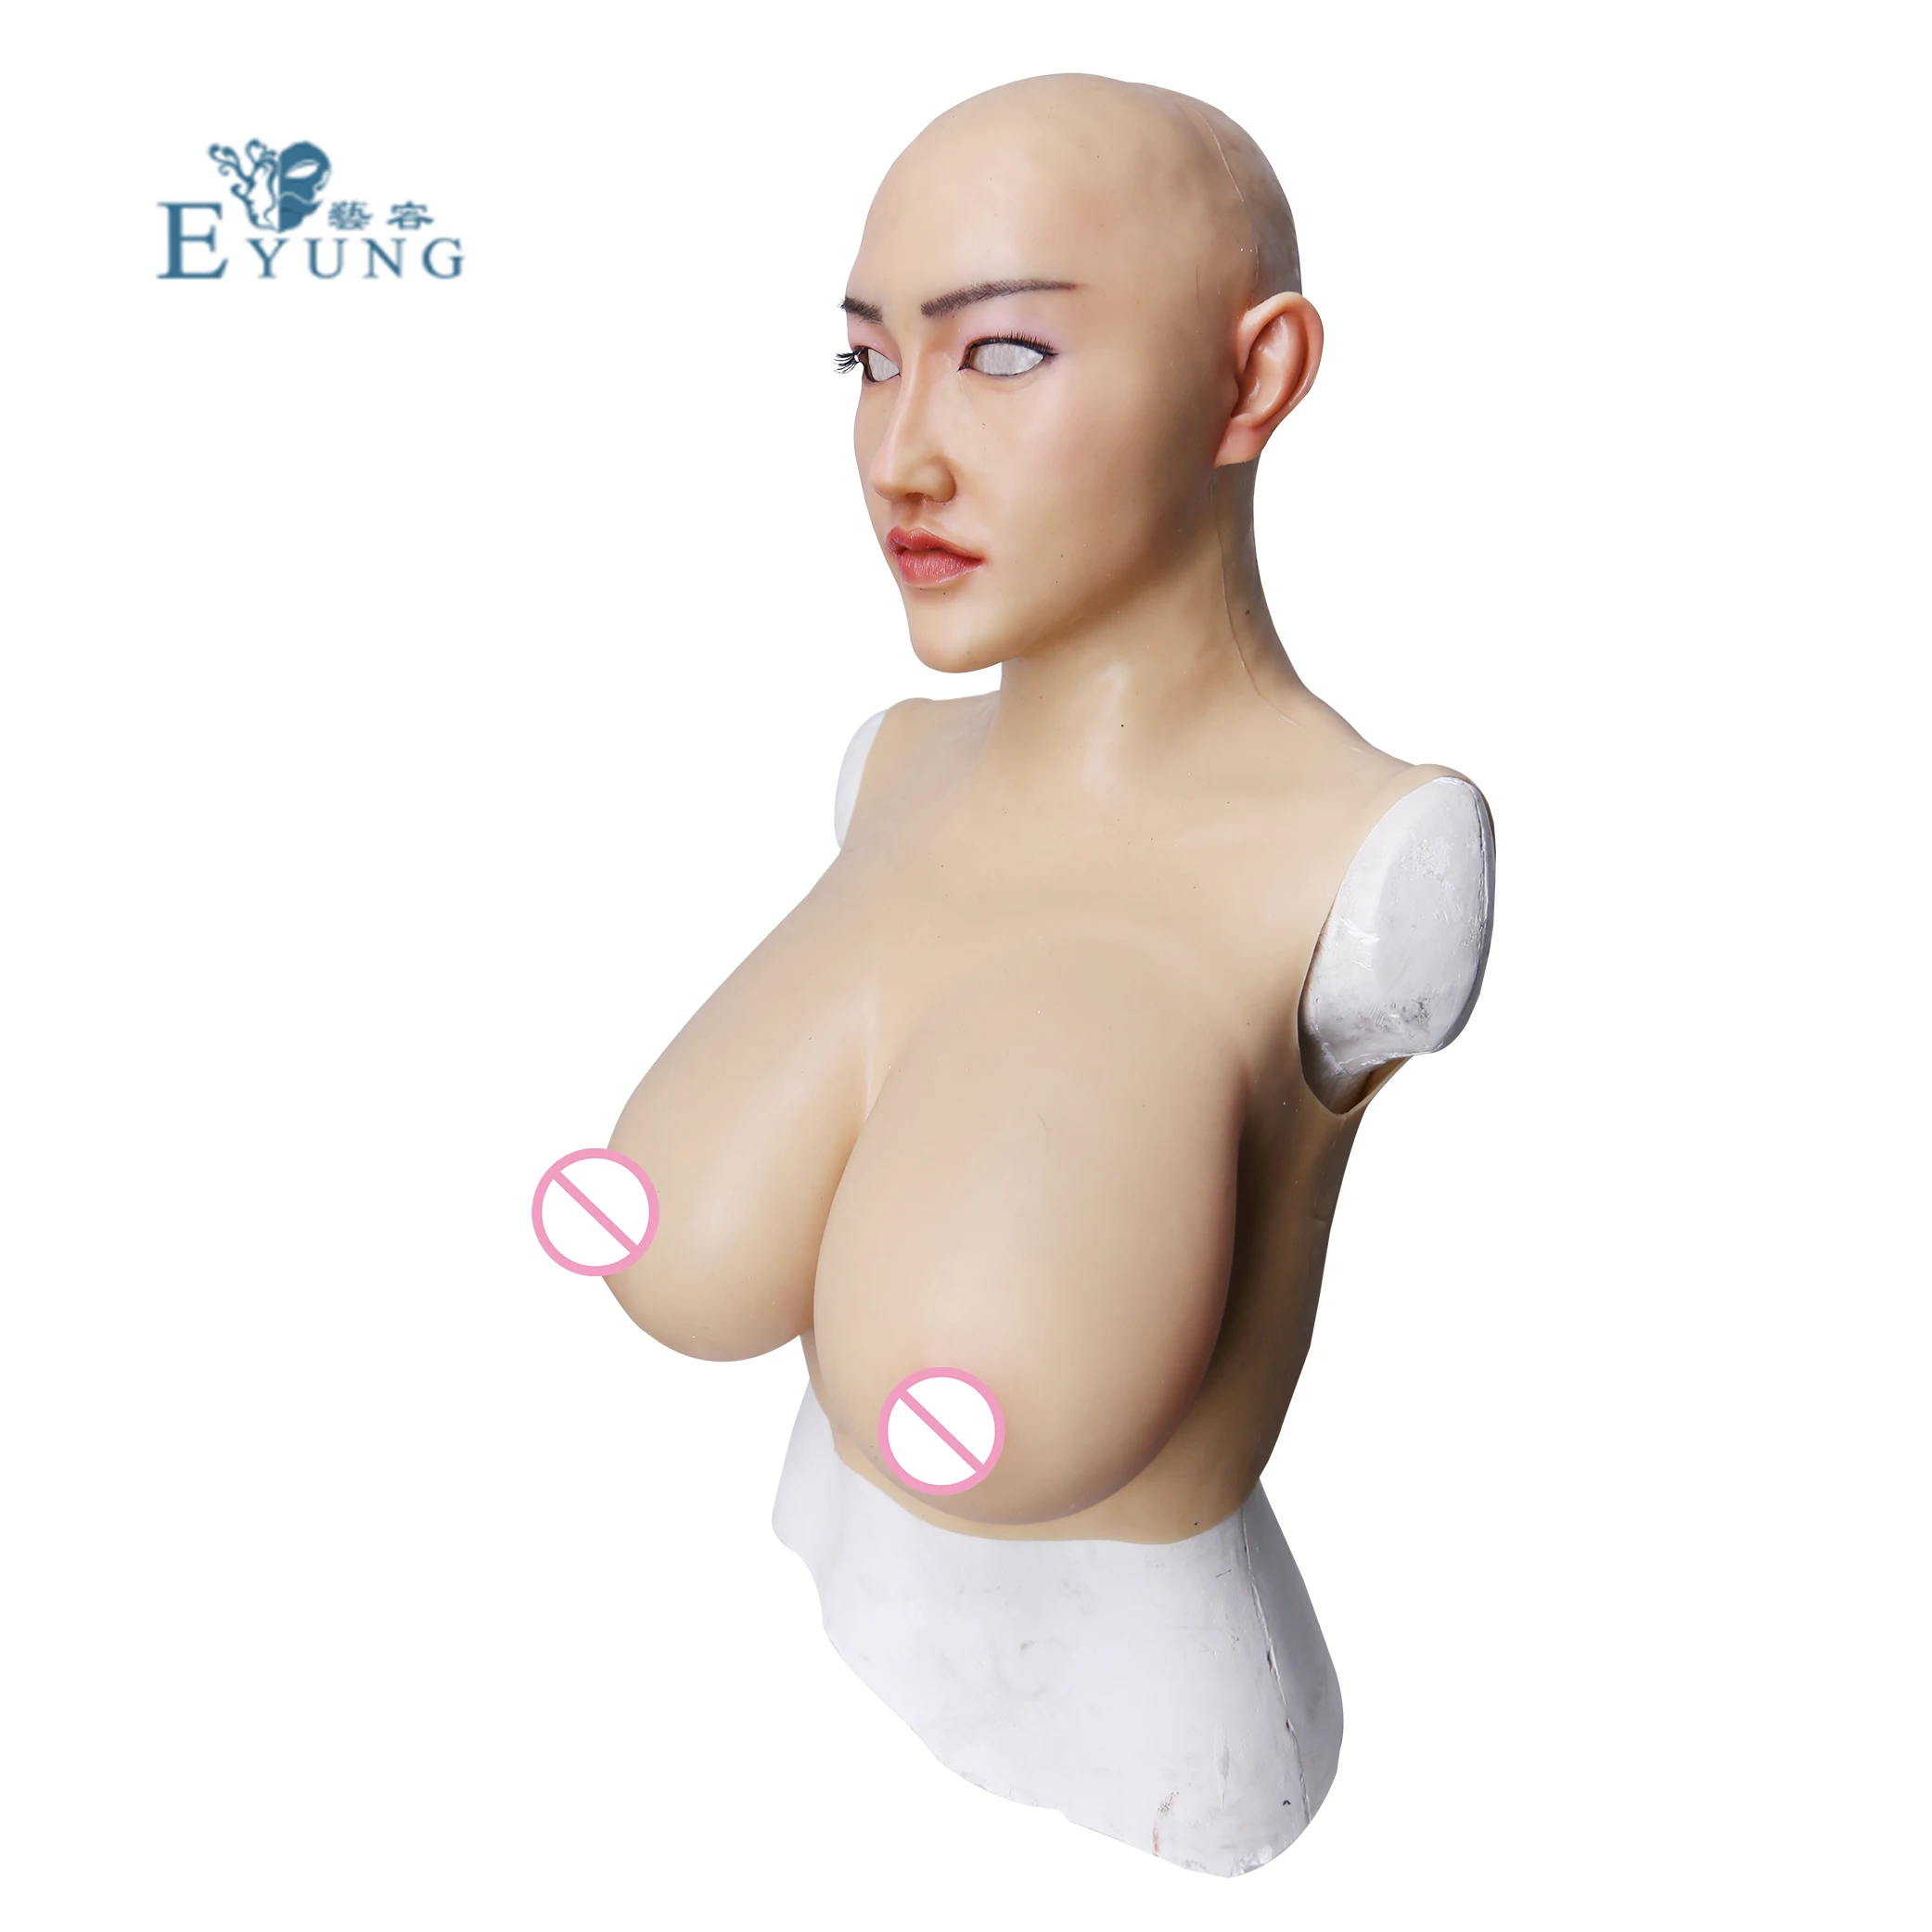 EYUNG Shiver маска для мужчин и женщин ручной работы из мягкого силикона Реалистичная silicion женская маска с формой груди для трансвеститов Косплей